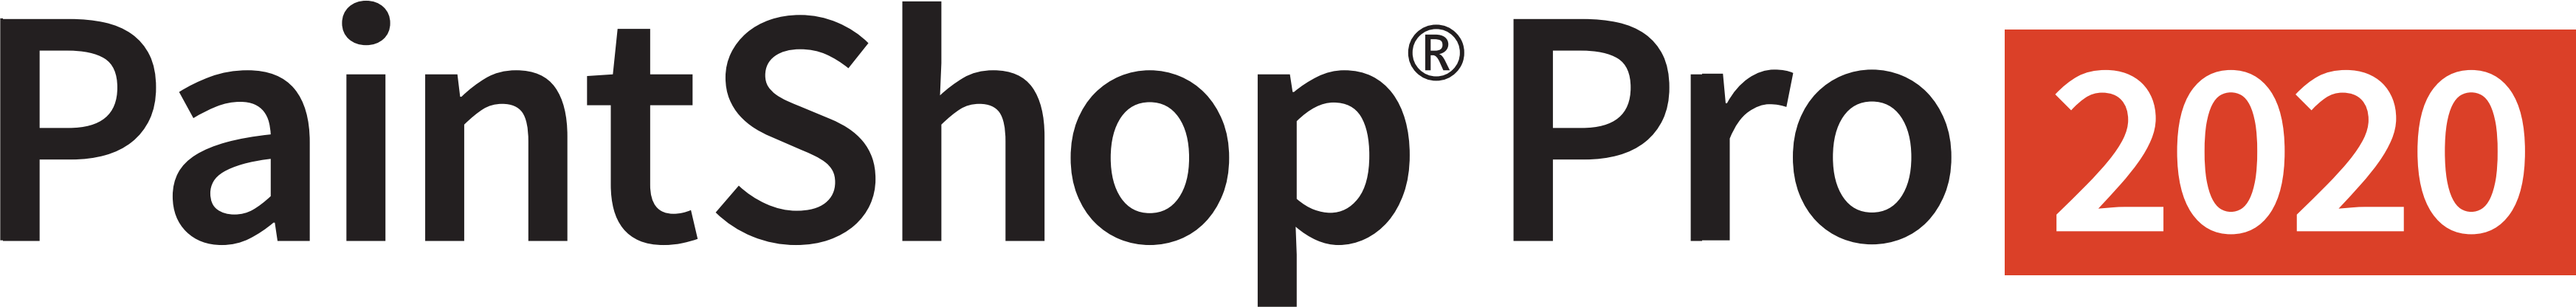 PaintShop Pro 2020 (logo)